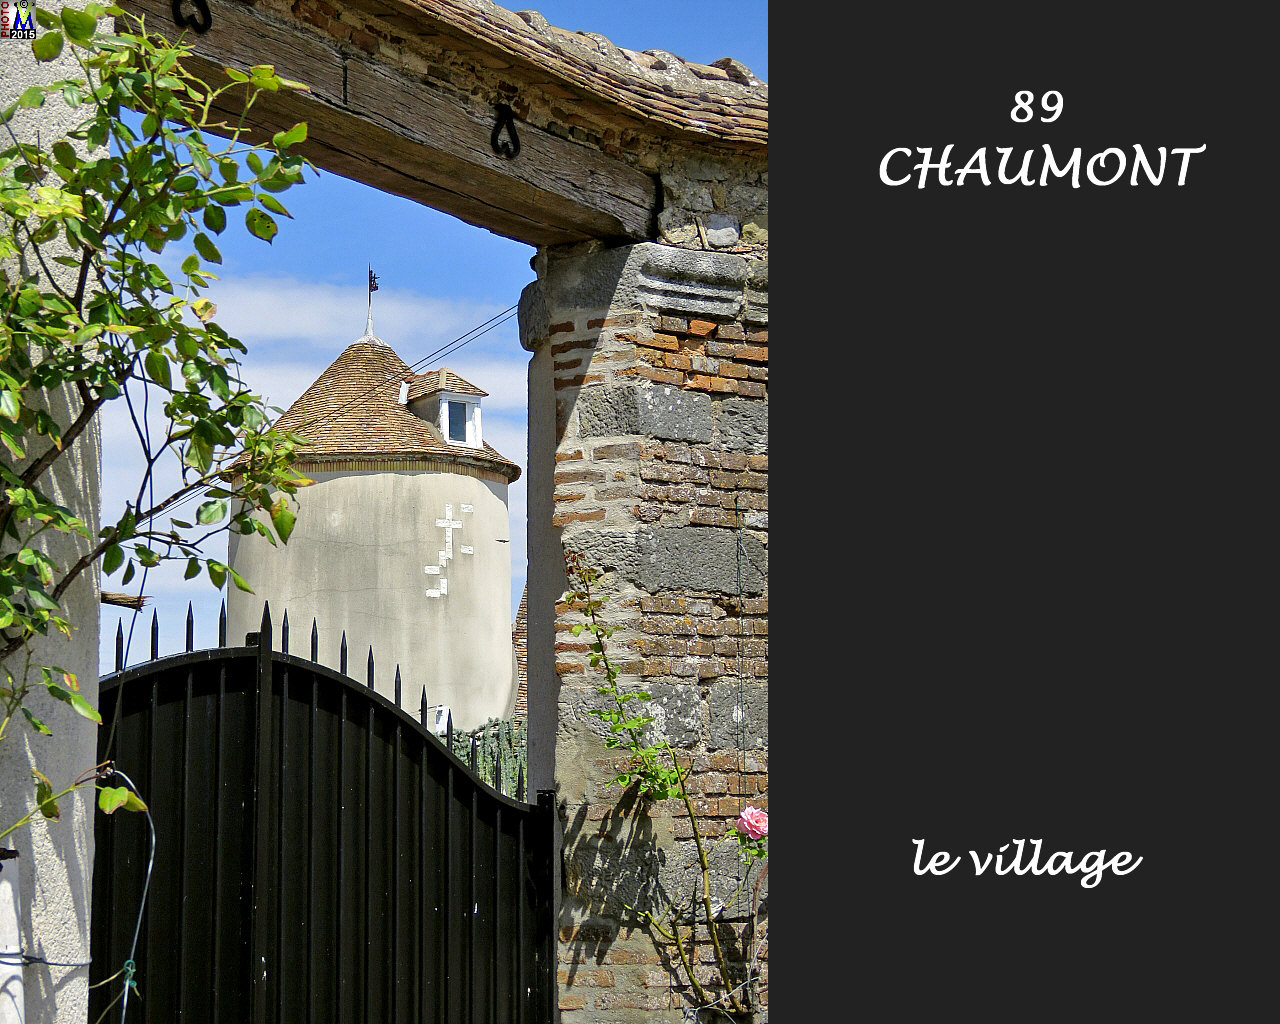 89CHAUMONT_village_106.jpg